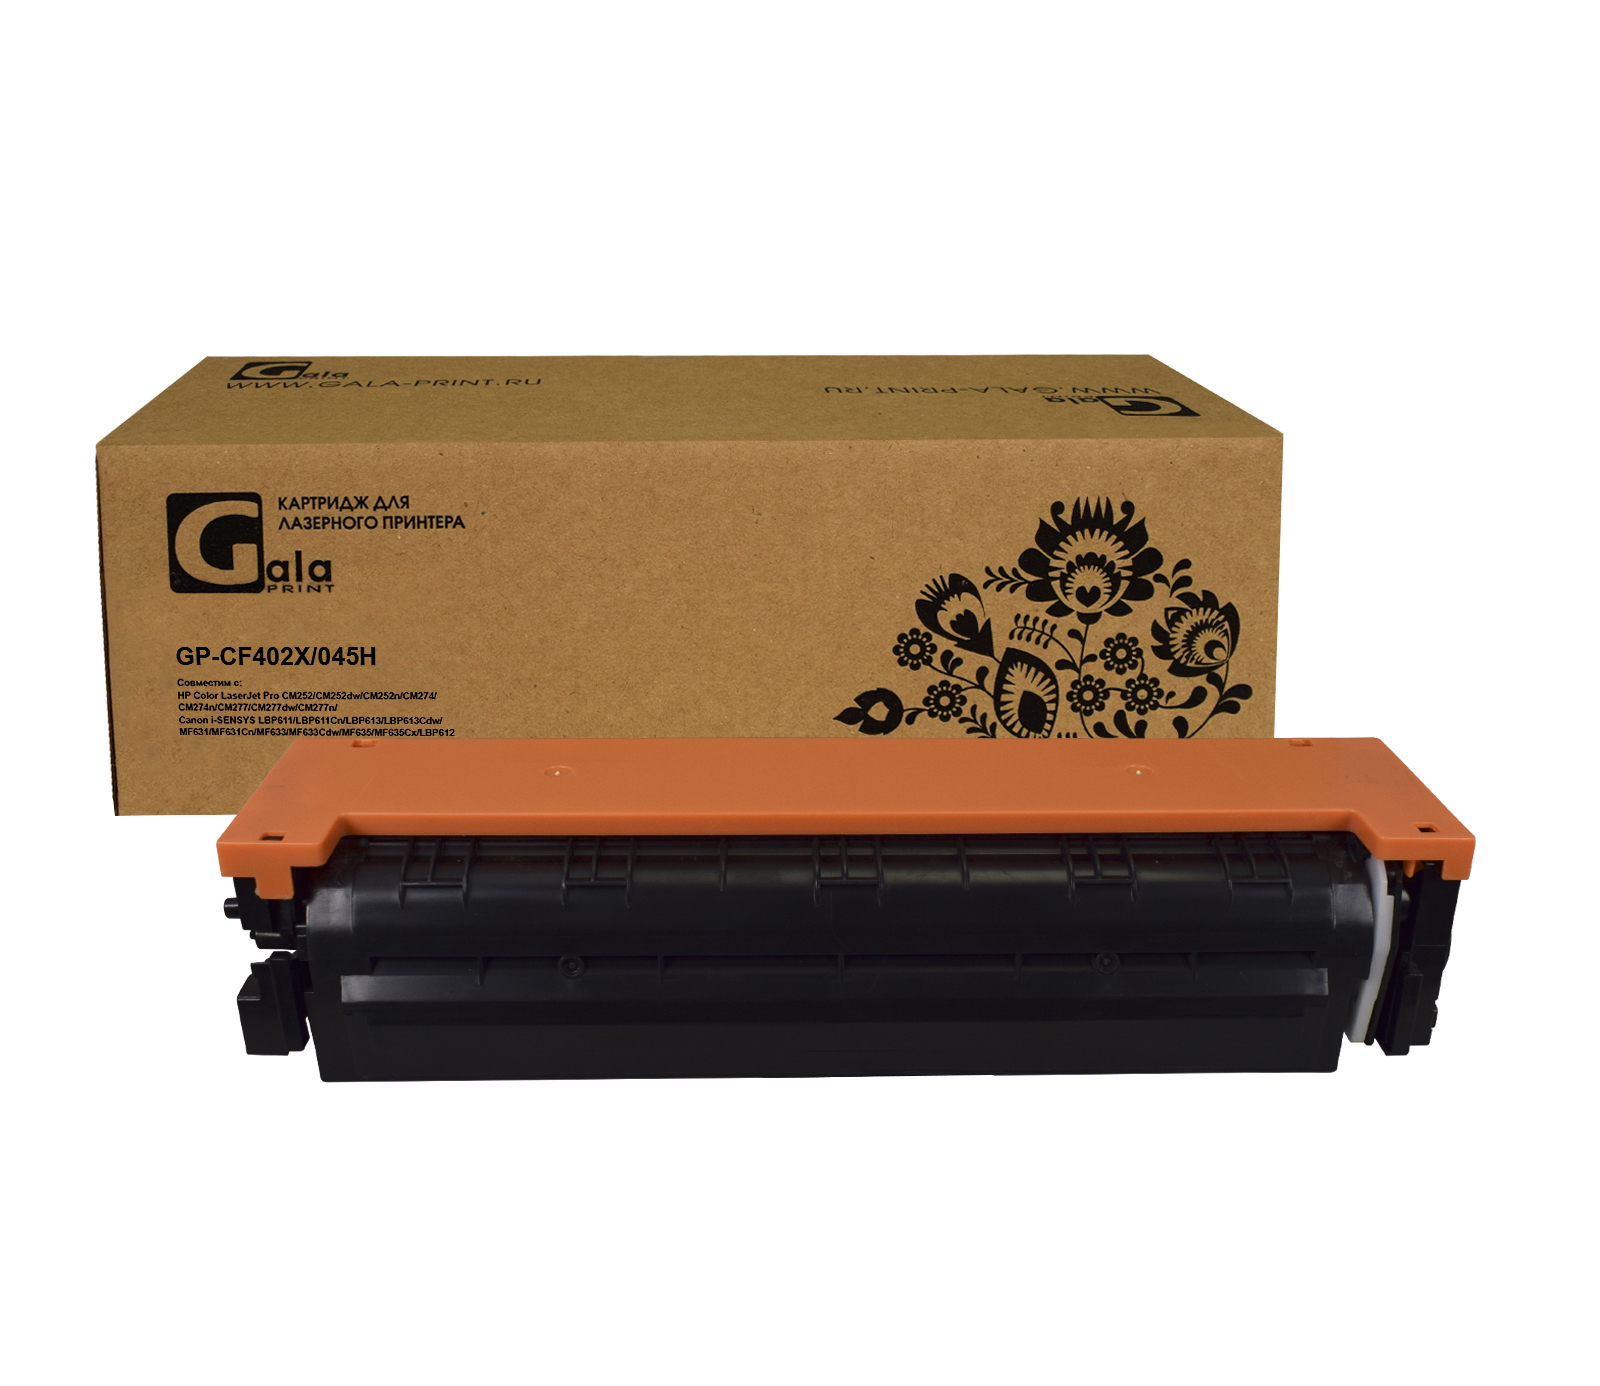 Картридж GP-CF402X №201X для принтеров HP Color LaserJet Pro M252/MFP277 2300 копий Yellow GalaPrint